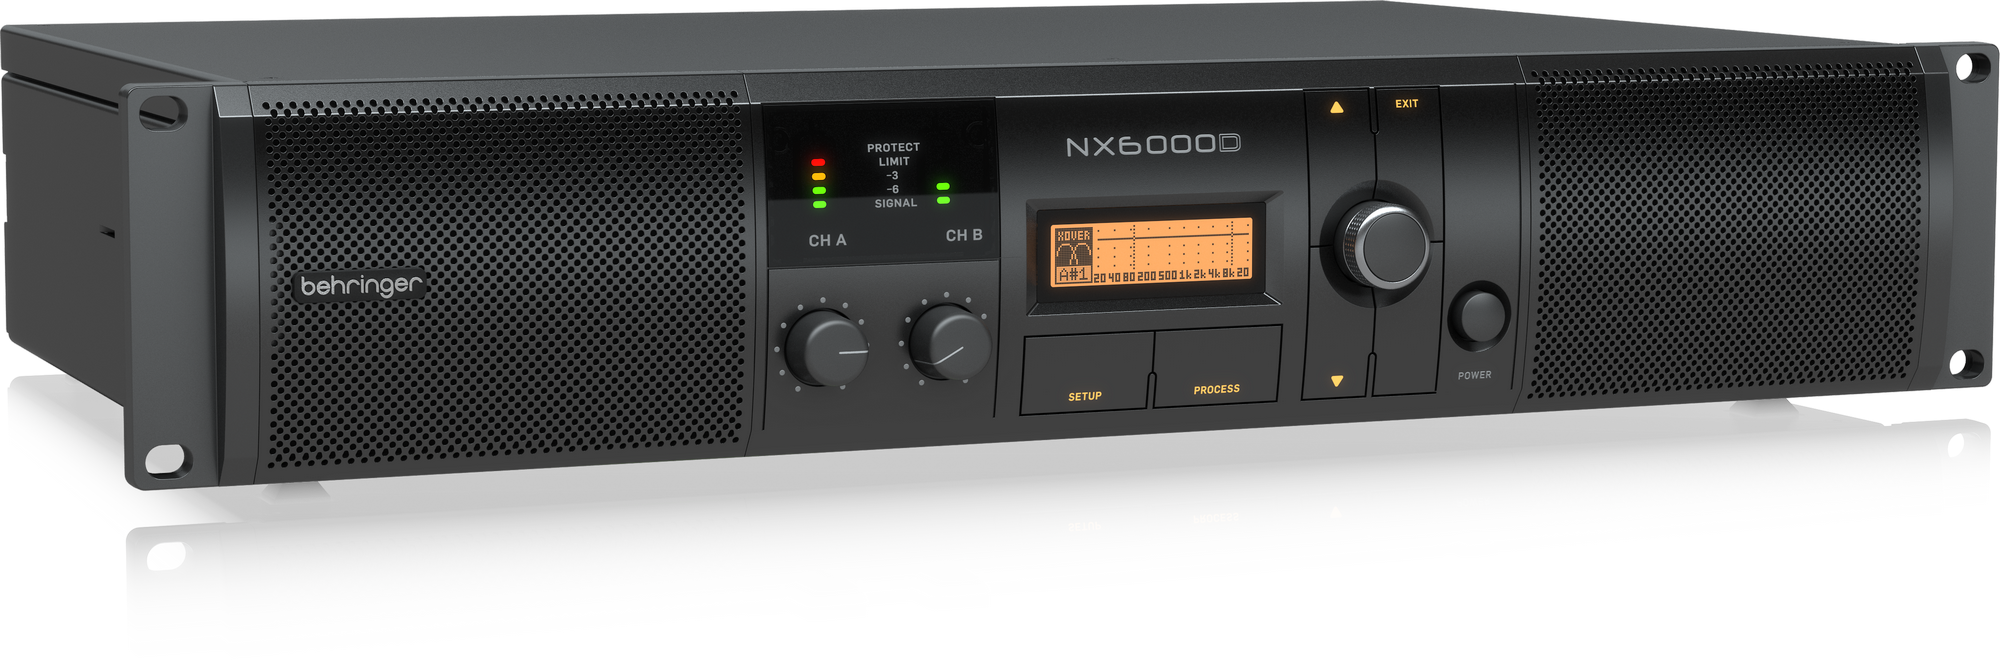 NX 6000D